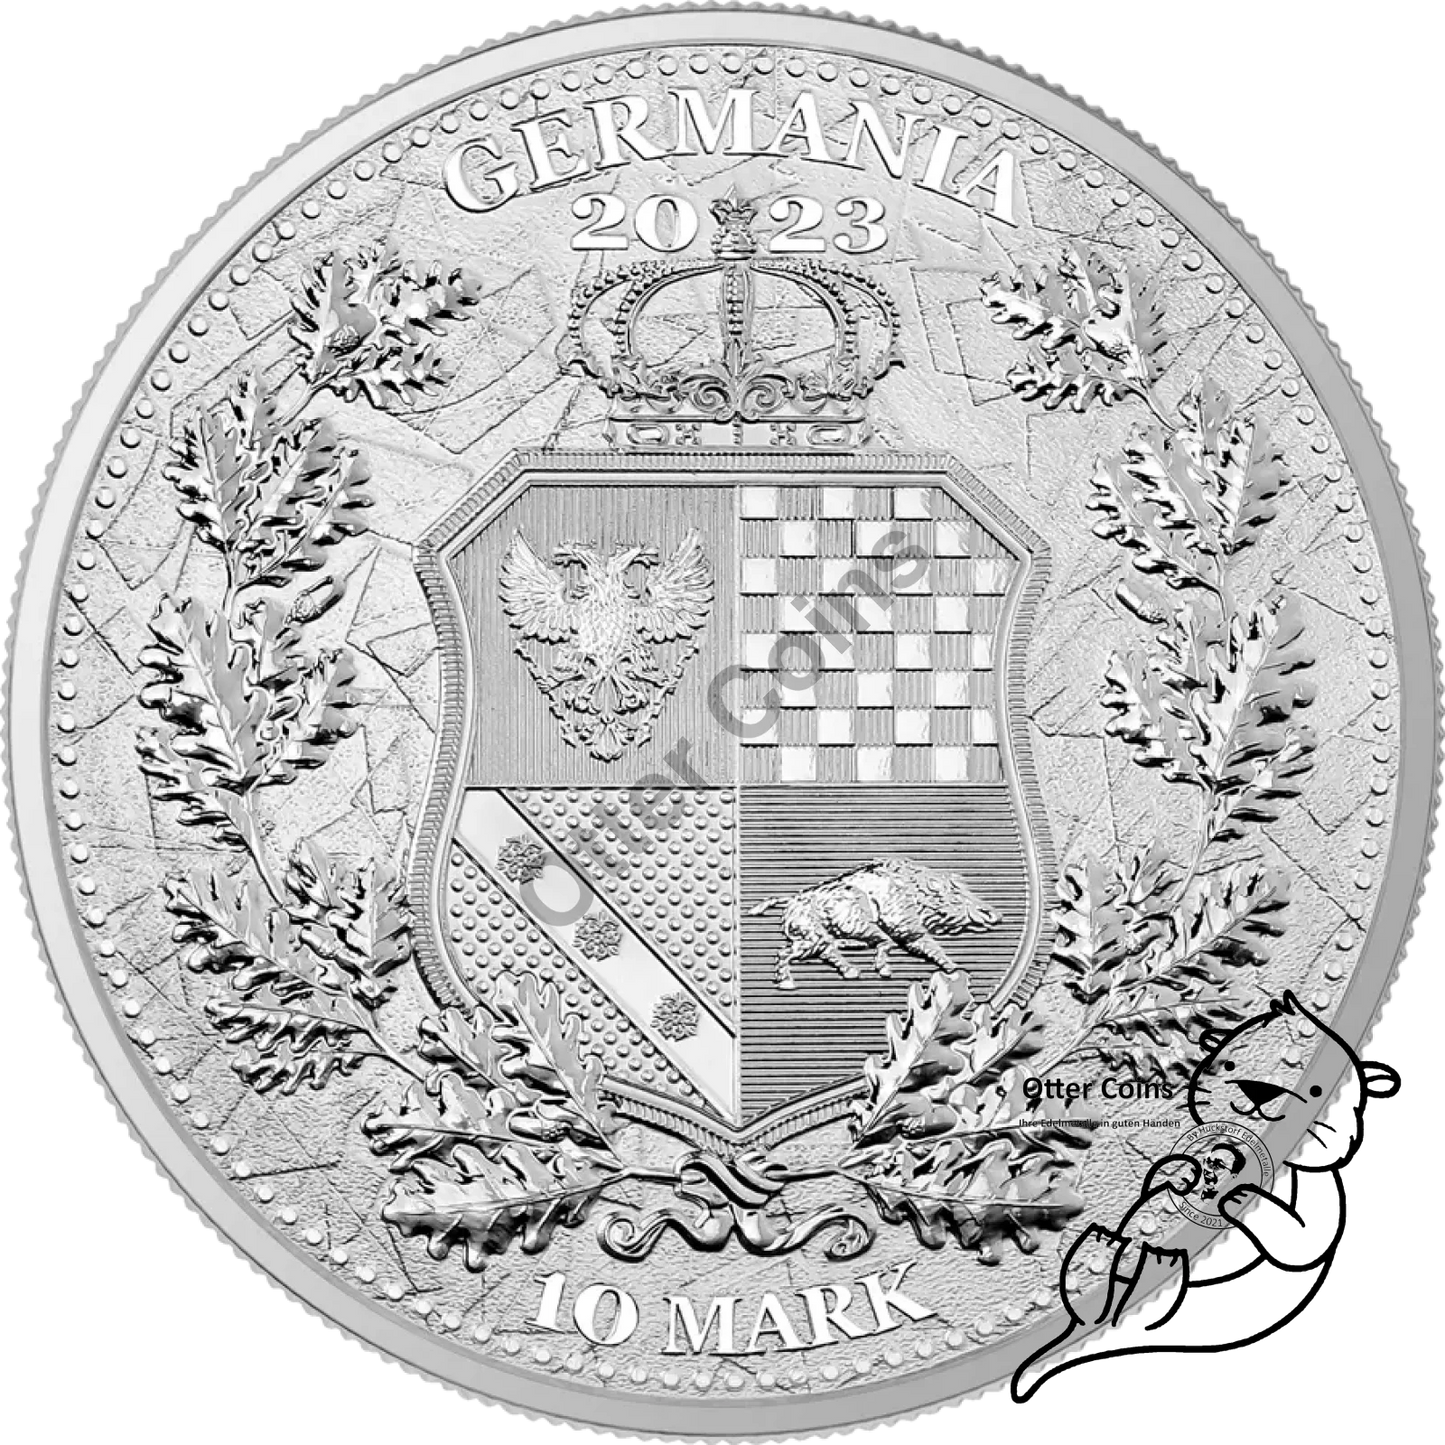 Germania Mint Allegories Galia & Germania 2 Oz Silbermünze